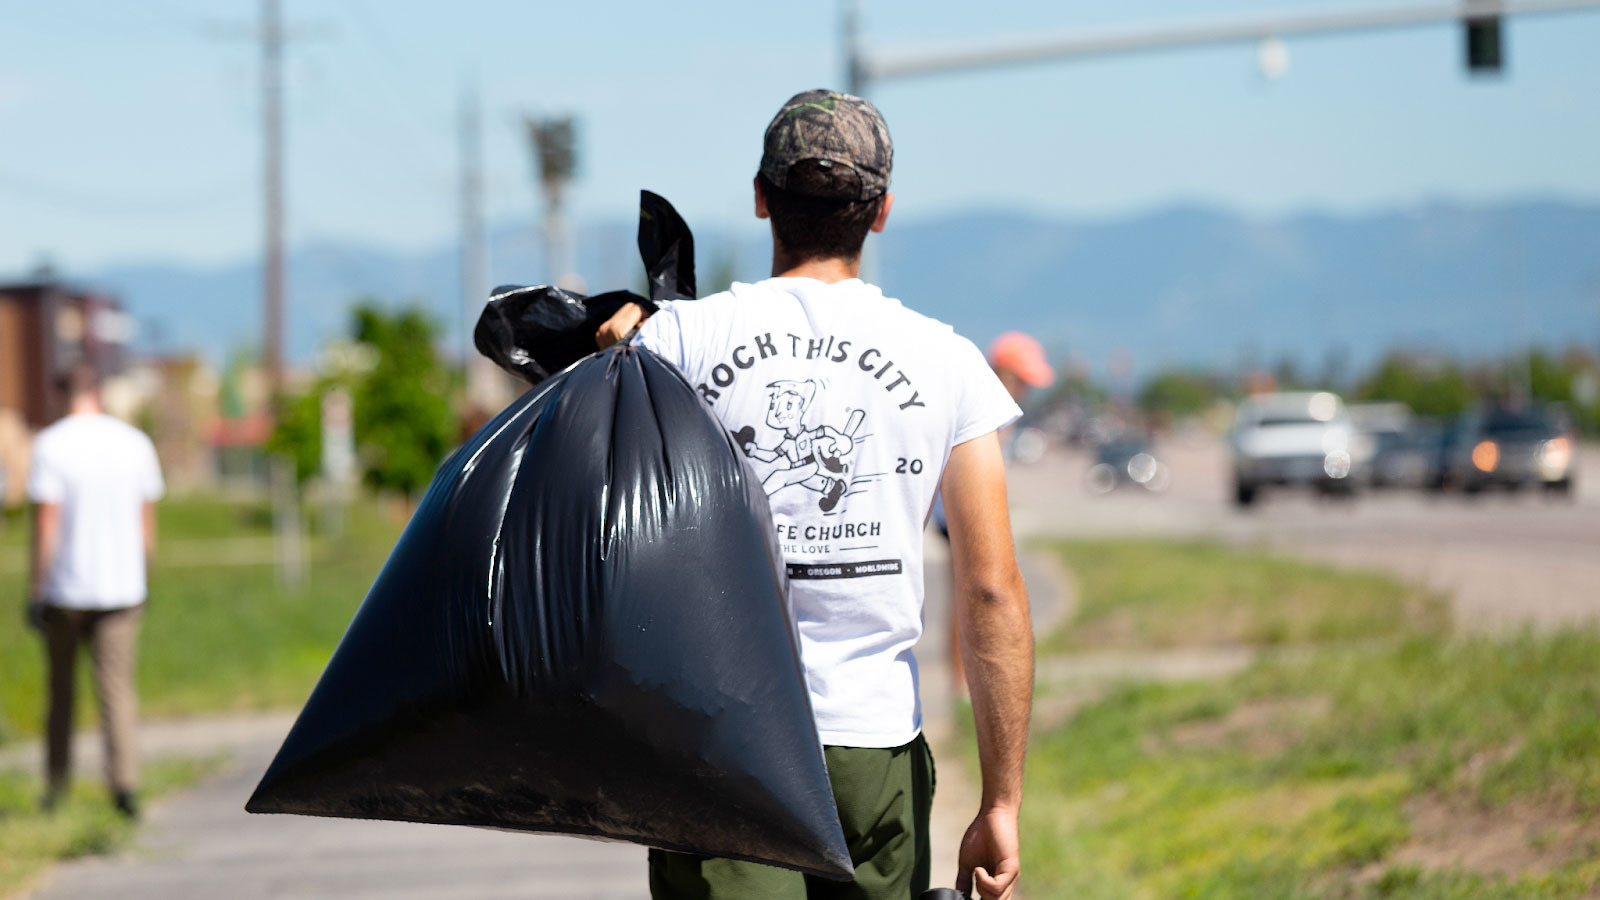 Volunteer cleaning up trash along roadside.